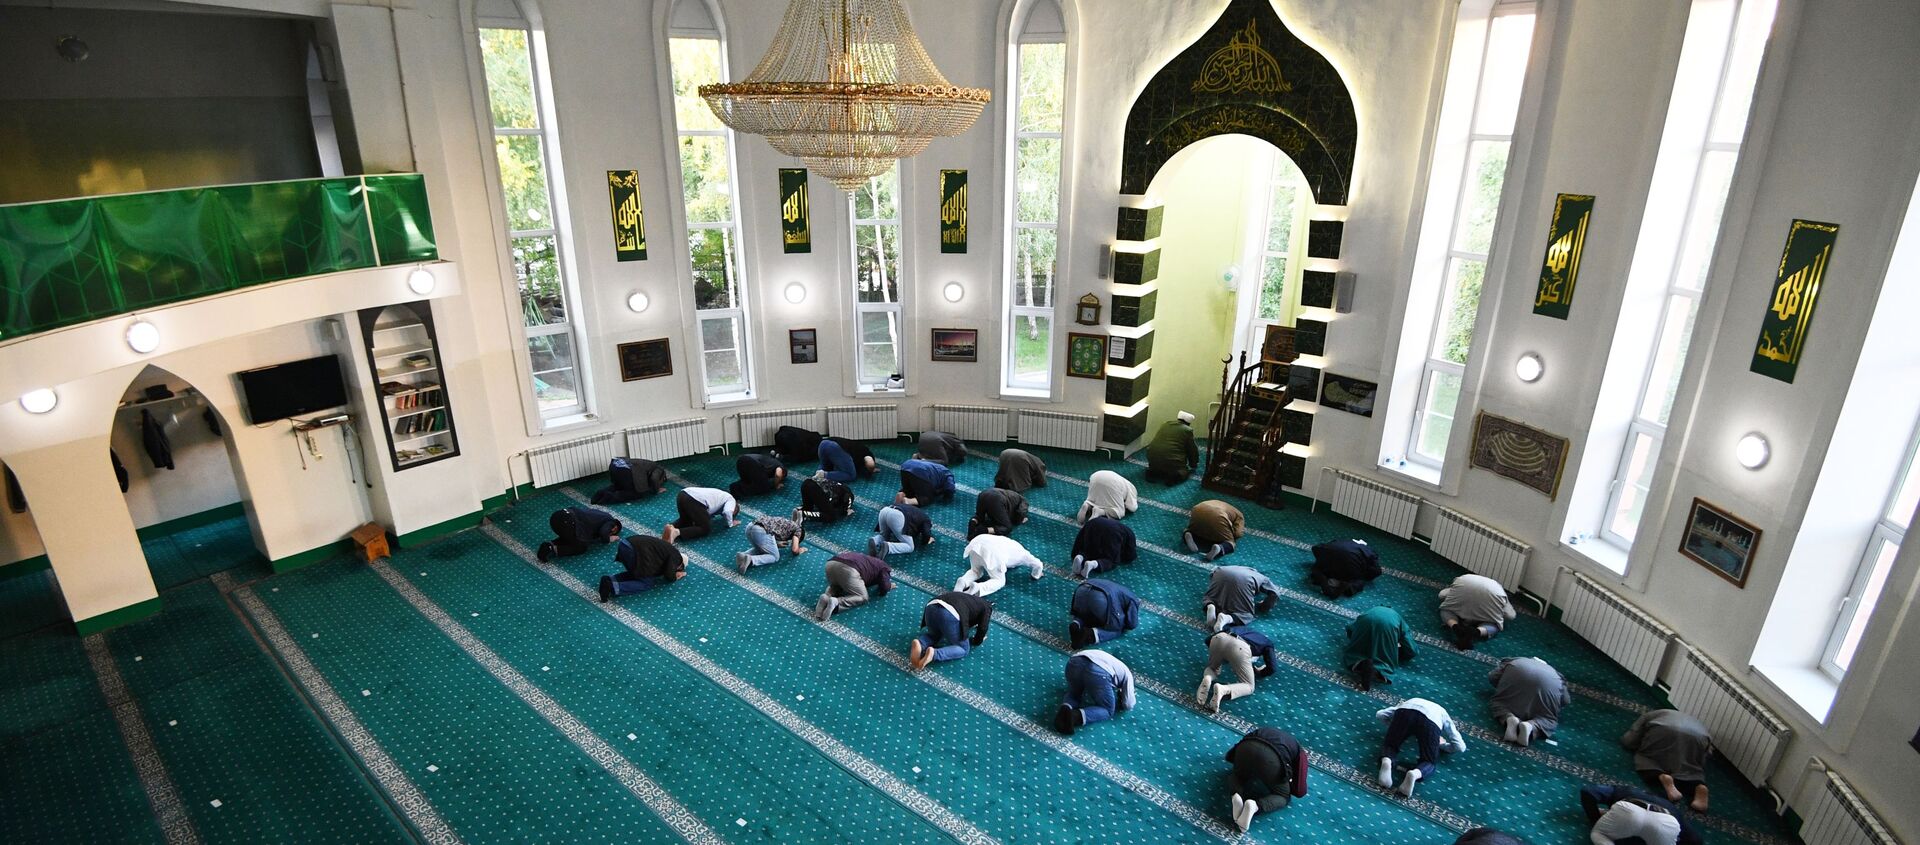 Мусульмане во время праздничной молитвы в Соборной мечети Новосибирска - Sputnik Таджикистан, 1920, 26.01.2021